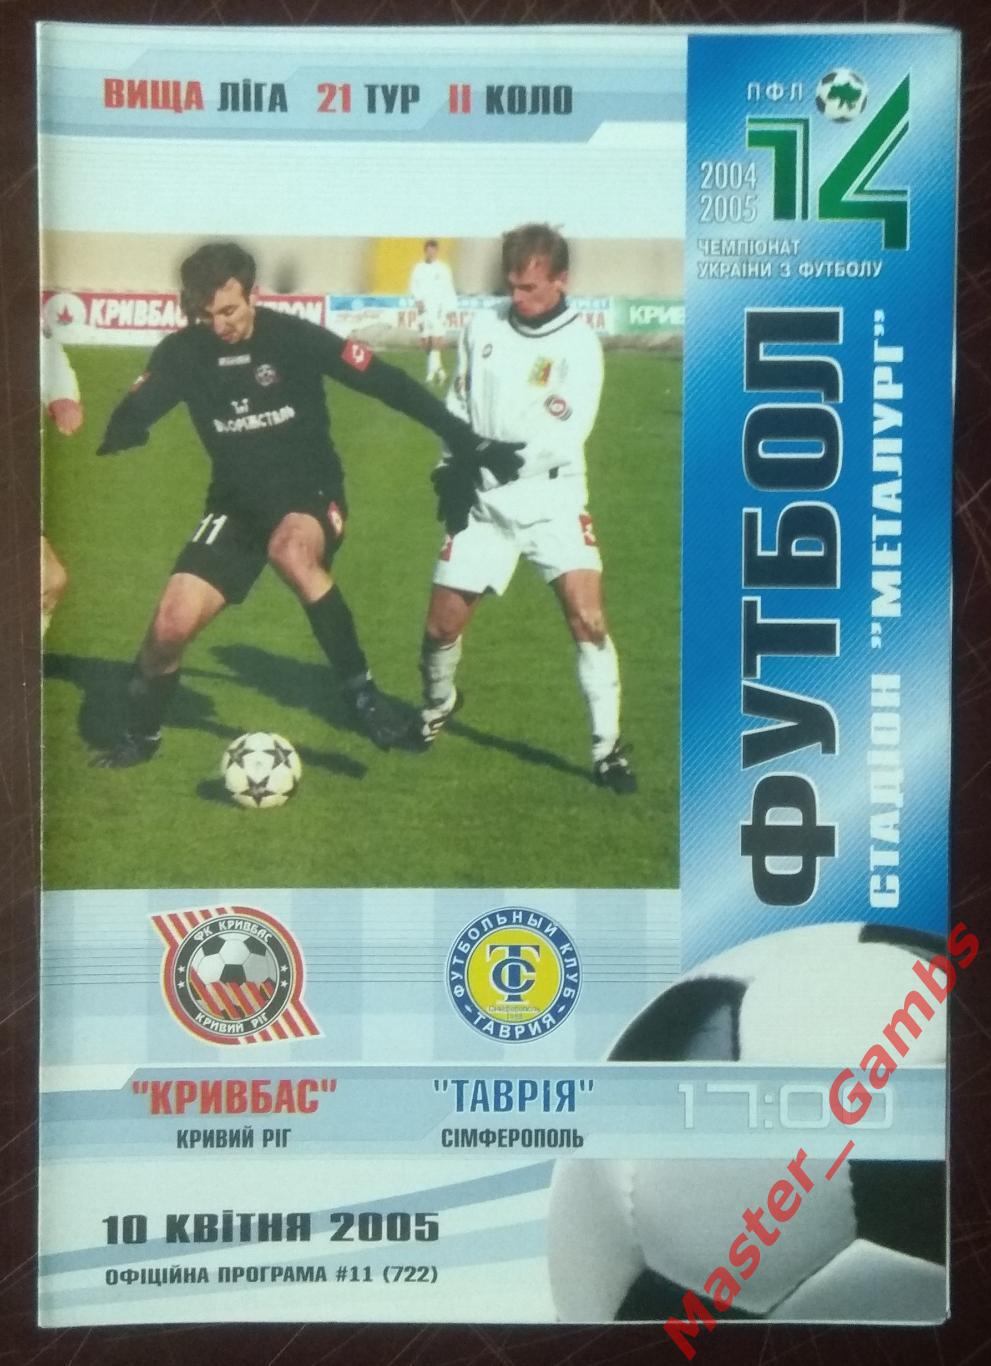 Кривбасс Кривой Рог - Таврия Симферополь 2004/2005*